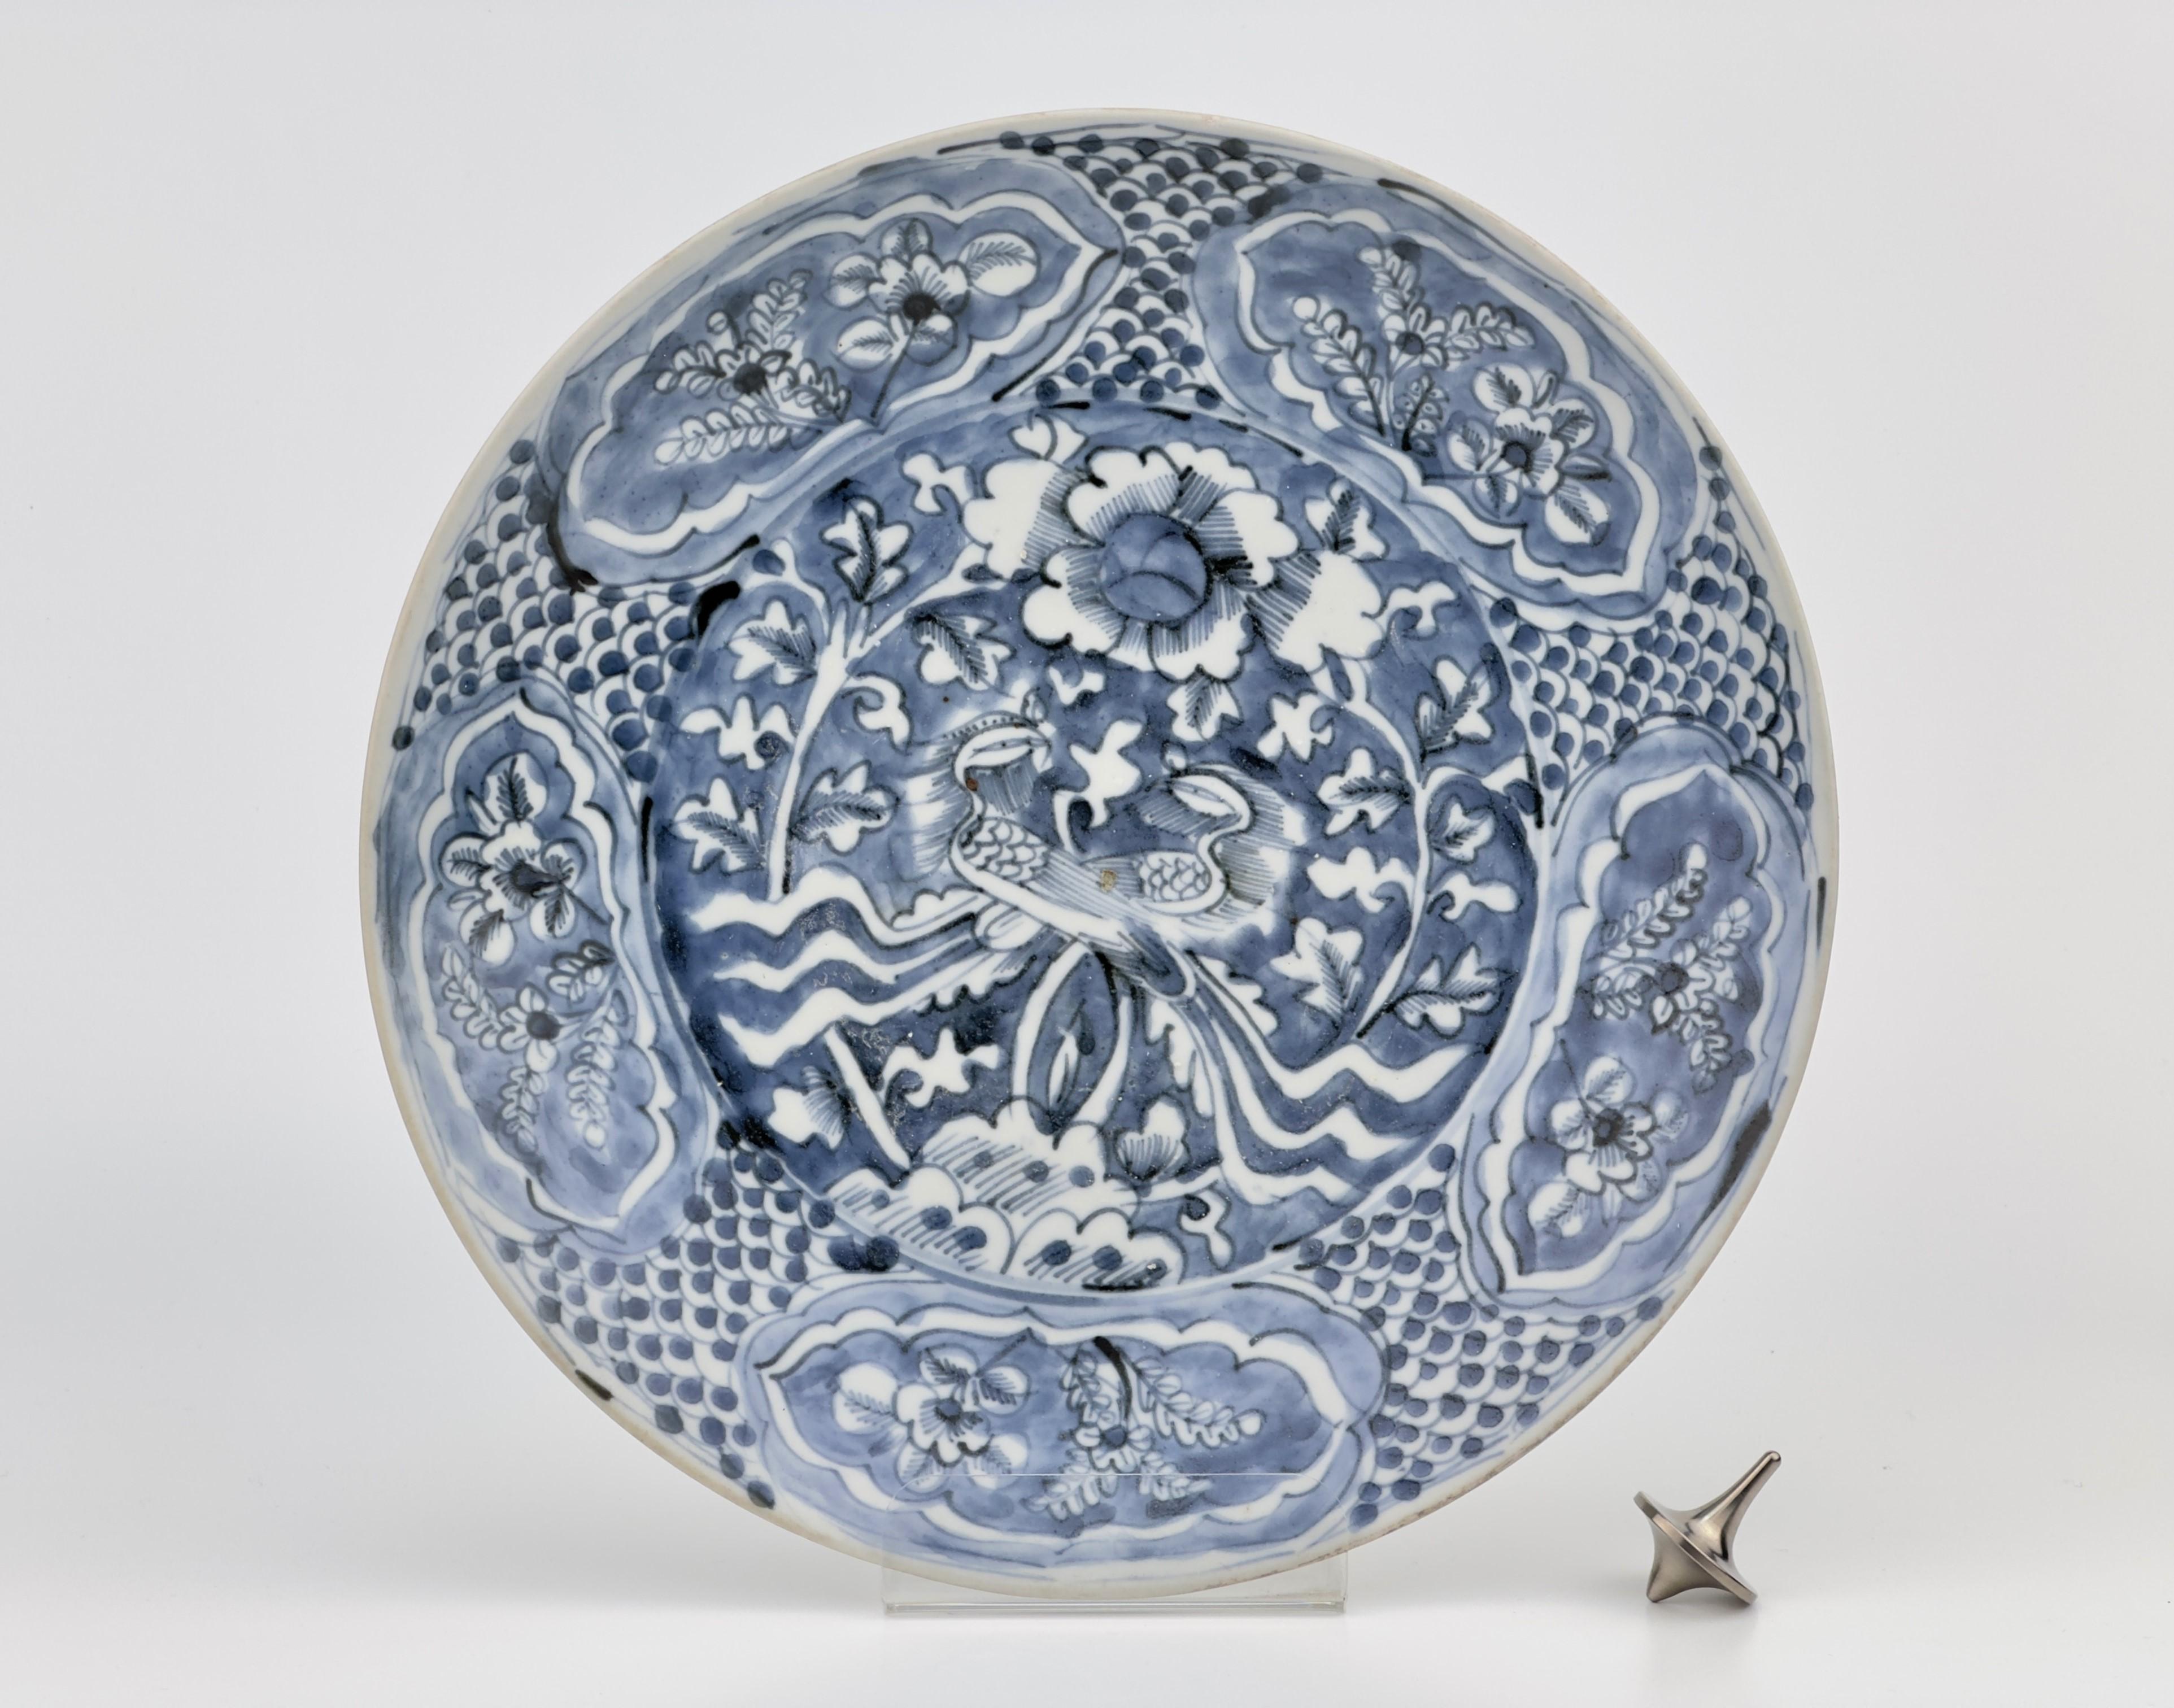 Célèbre assiette chinoise en porcelaine bleue et blanche de la fin de la dynastie des Ming, double phénix, provenant des naufrages de Binh Thuan

Période : Dynastie Ming (1368-1644)
Région : Jingdezhen, Chine
Type : Porcelaine bleue et